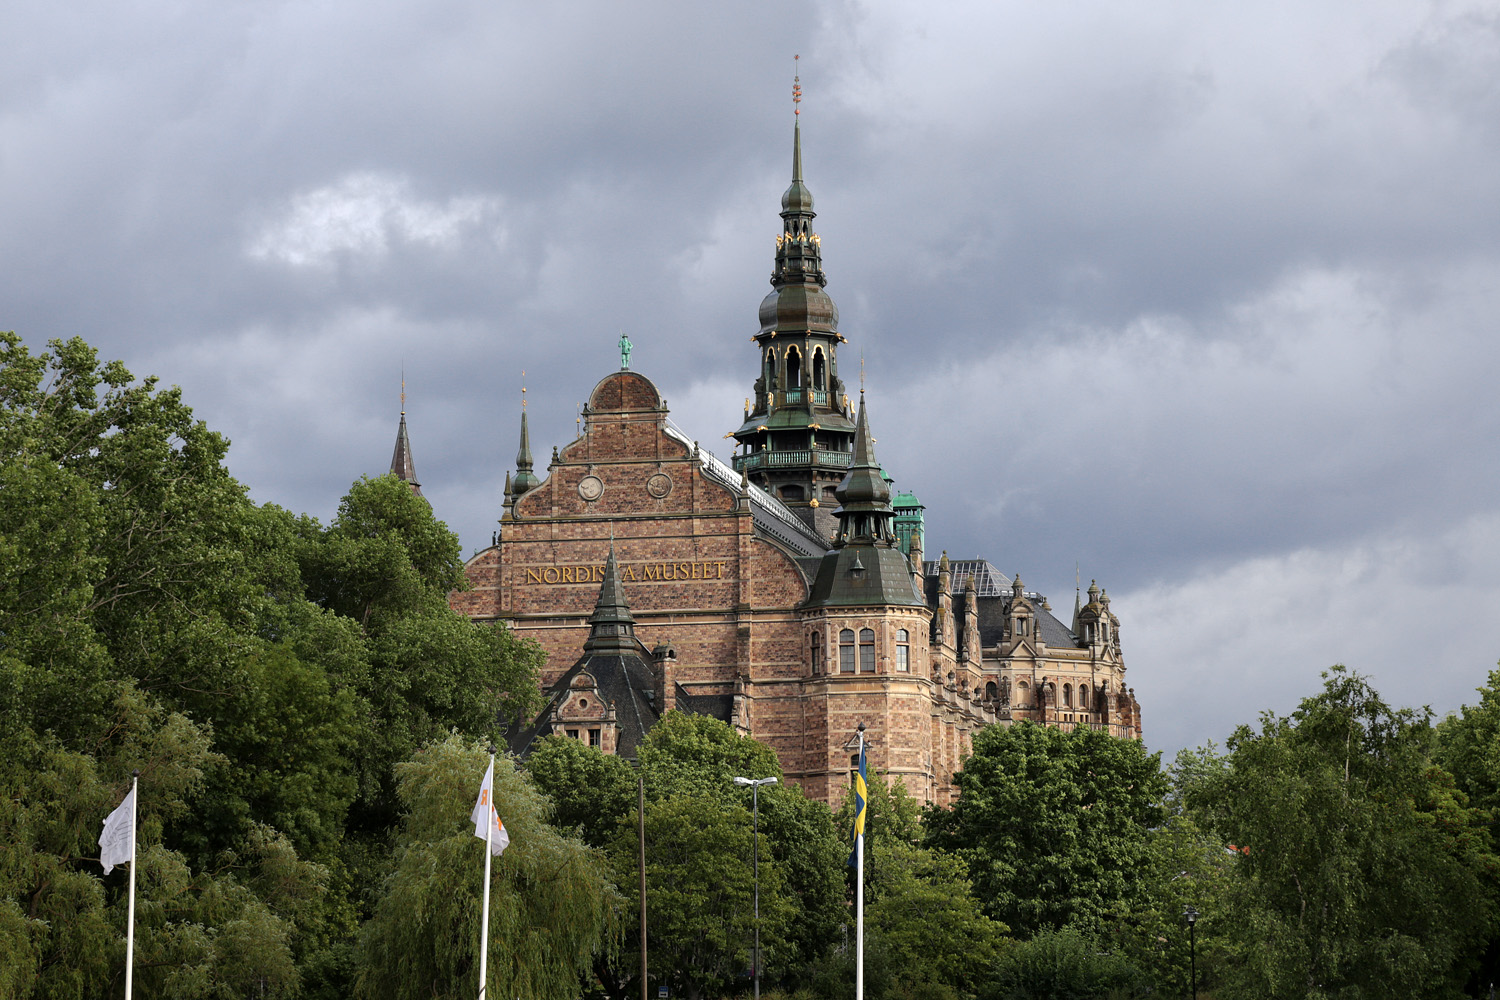 bill-hocker-nordiska-museum-stockholm-sweden-2019